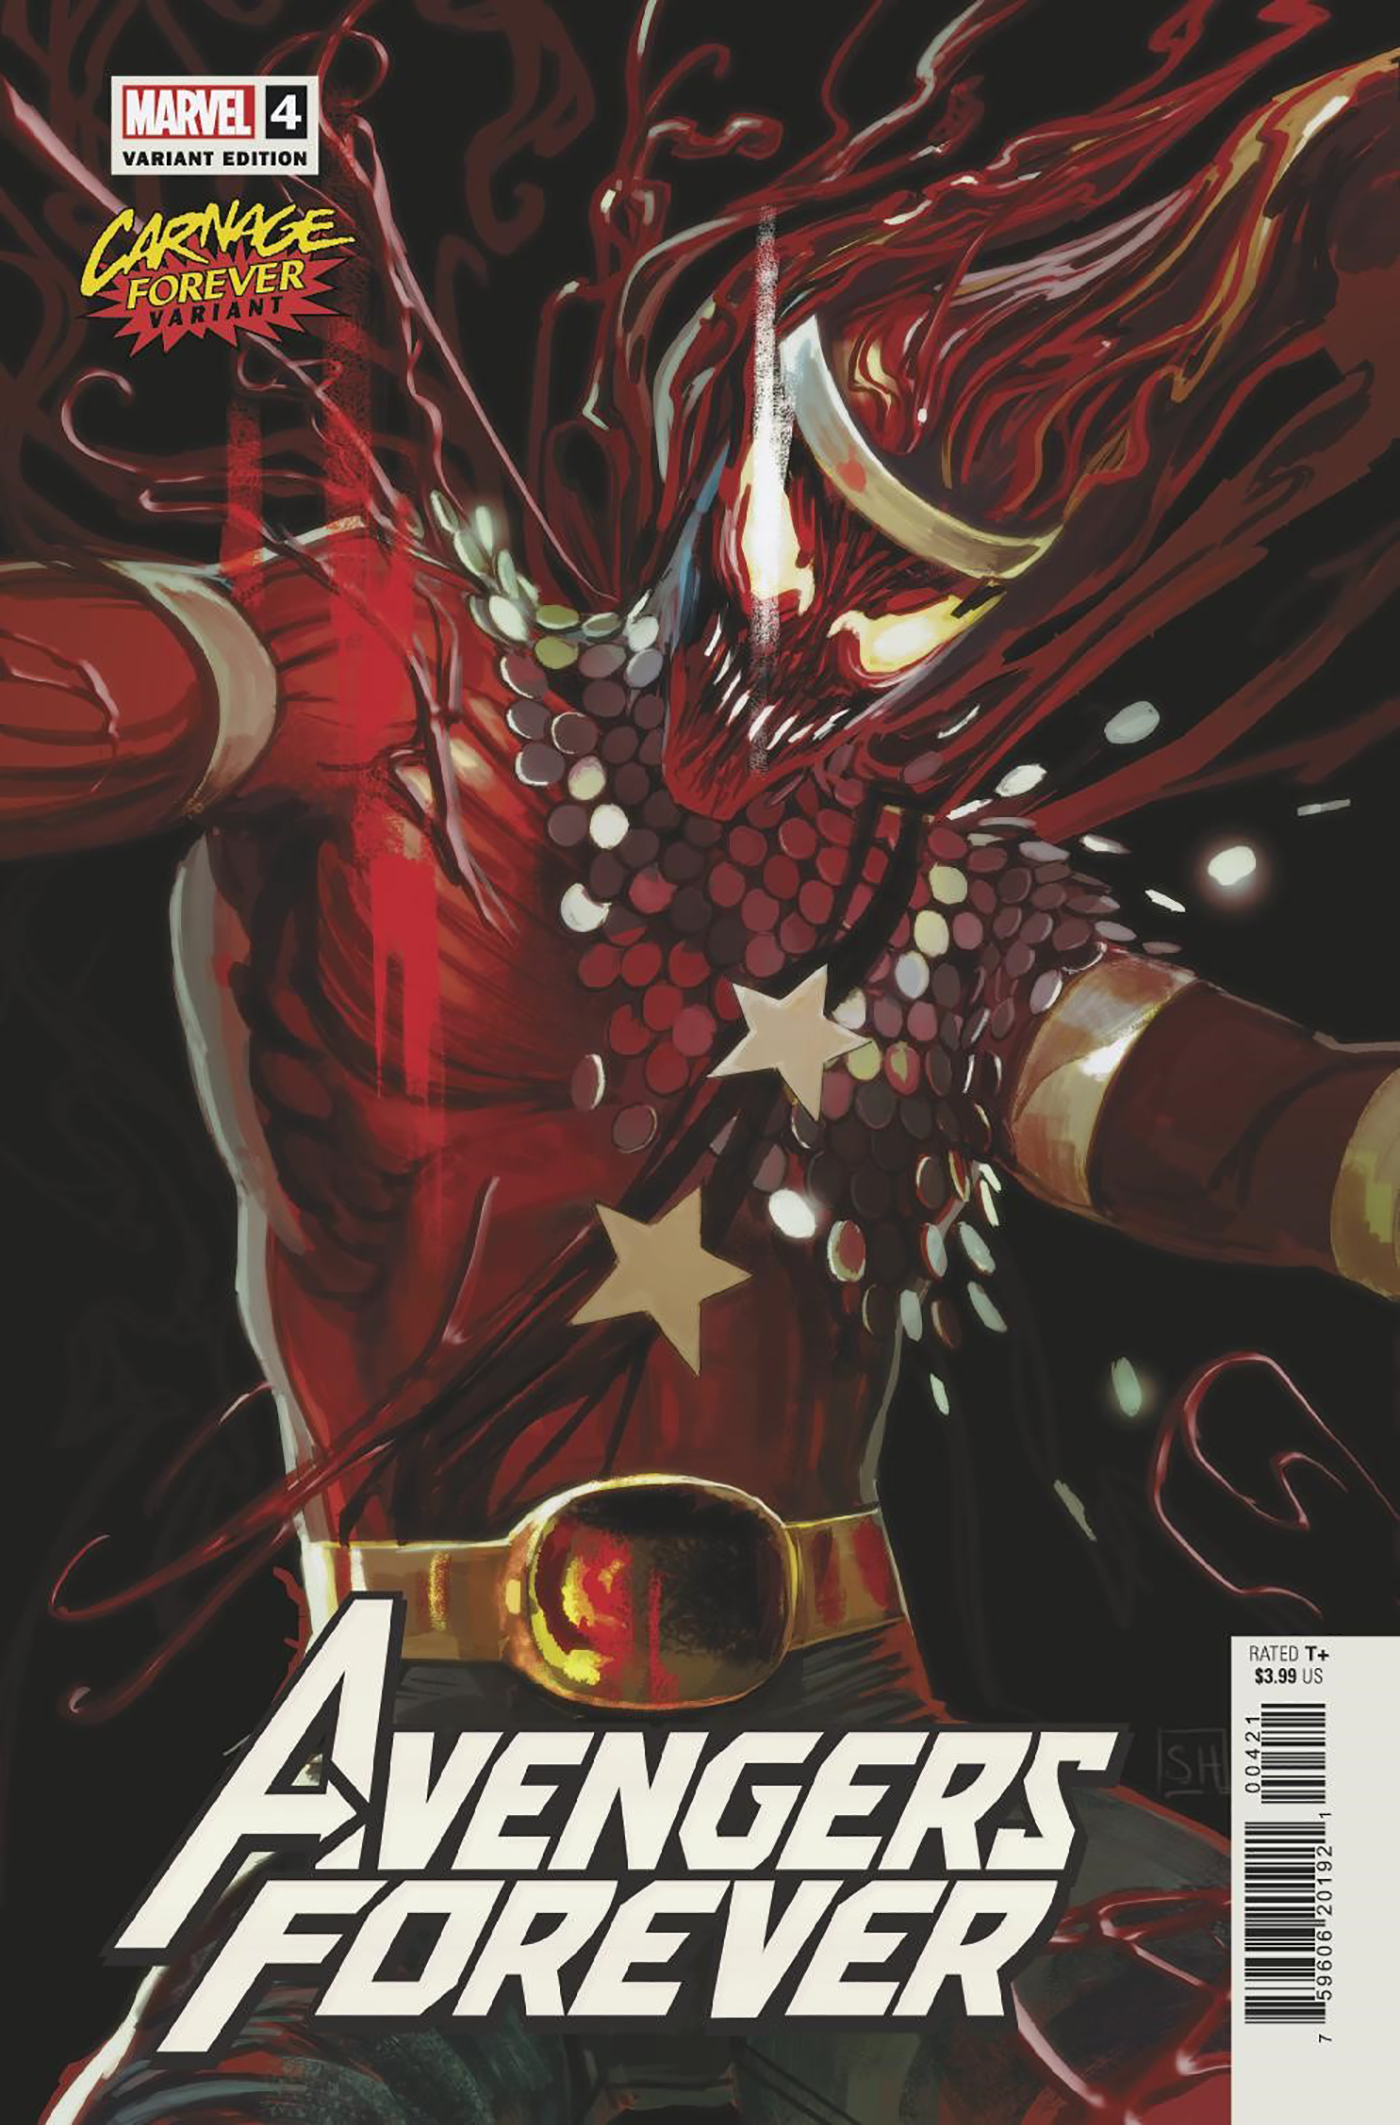 Avengers Forever #4 D Stephanie Hans Carnage Forever Variant (03/23/2022) Marvel